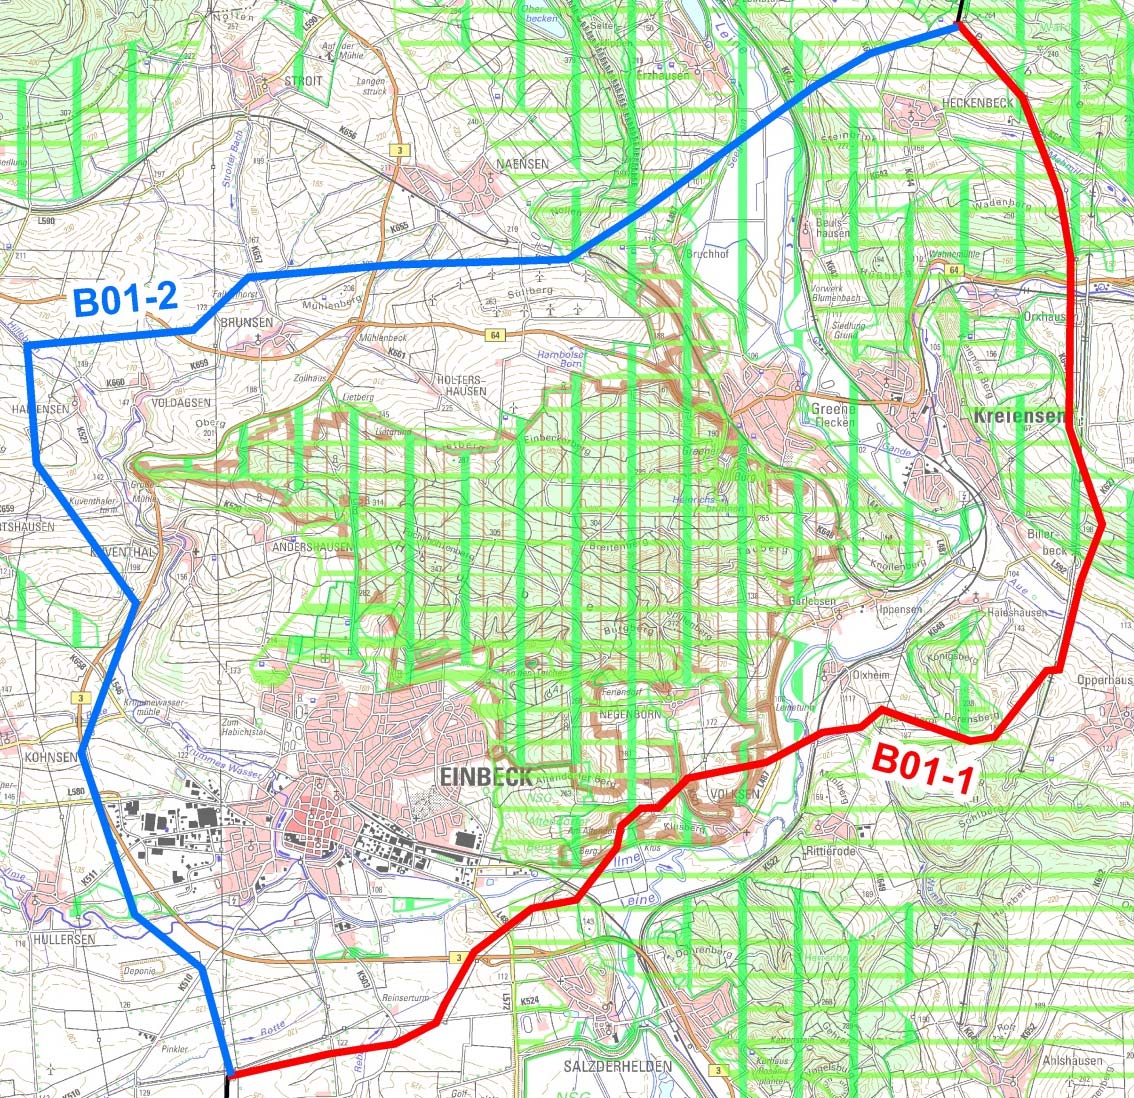 Variantenbereich B01 Einbeck / Erzhausen Schutzgut Landschaft B01-1: - Querung LSG Hube, Greener Wald und Luhberg (in Bündelung mit der bestehenden 110-kV-Leitung) - Querung von Vorbehaltsgebieten